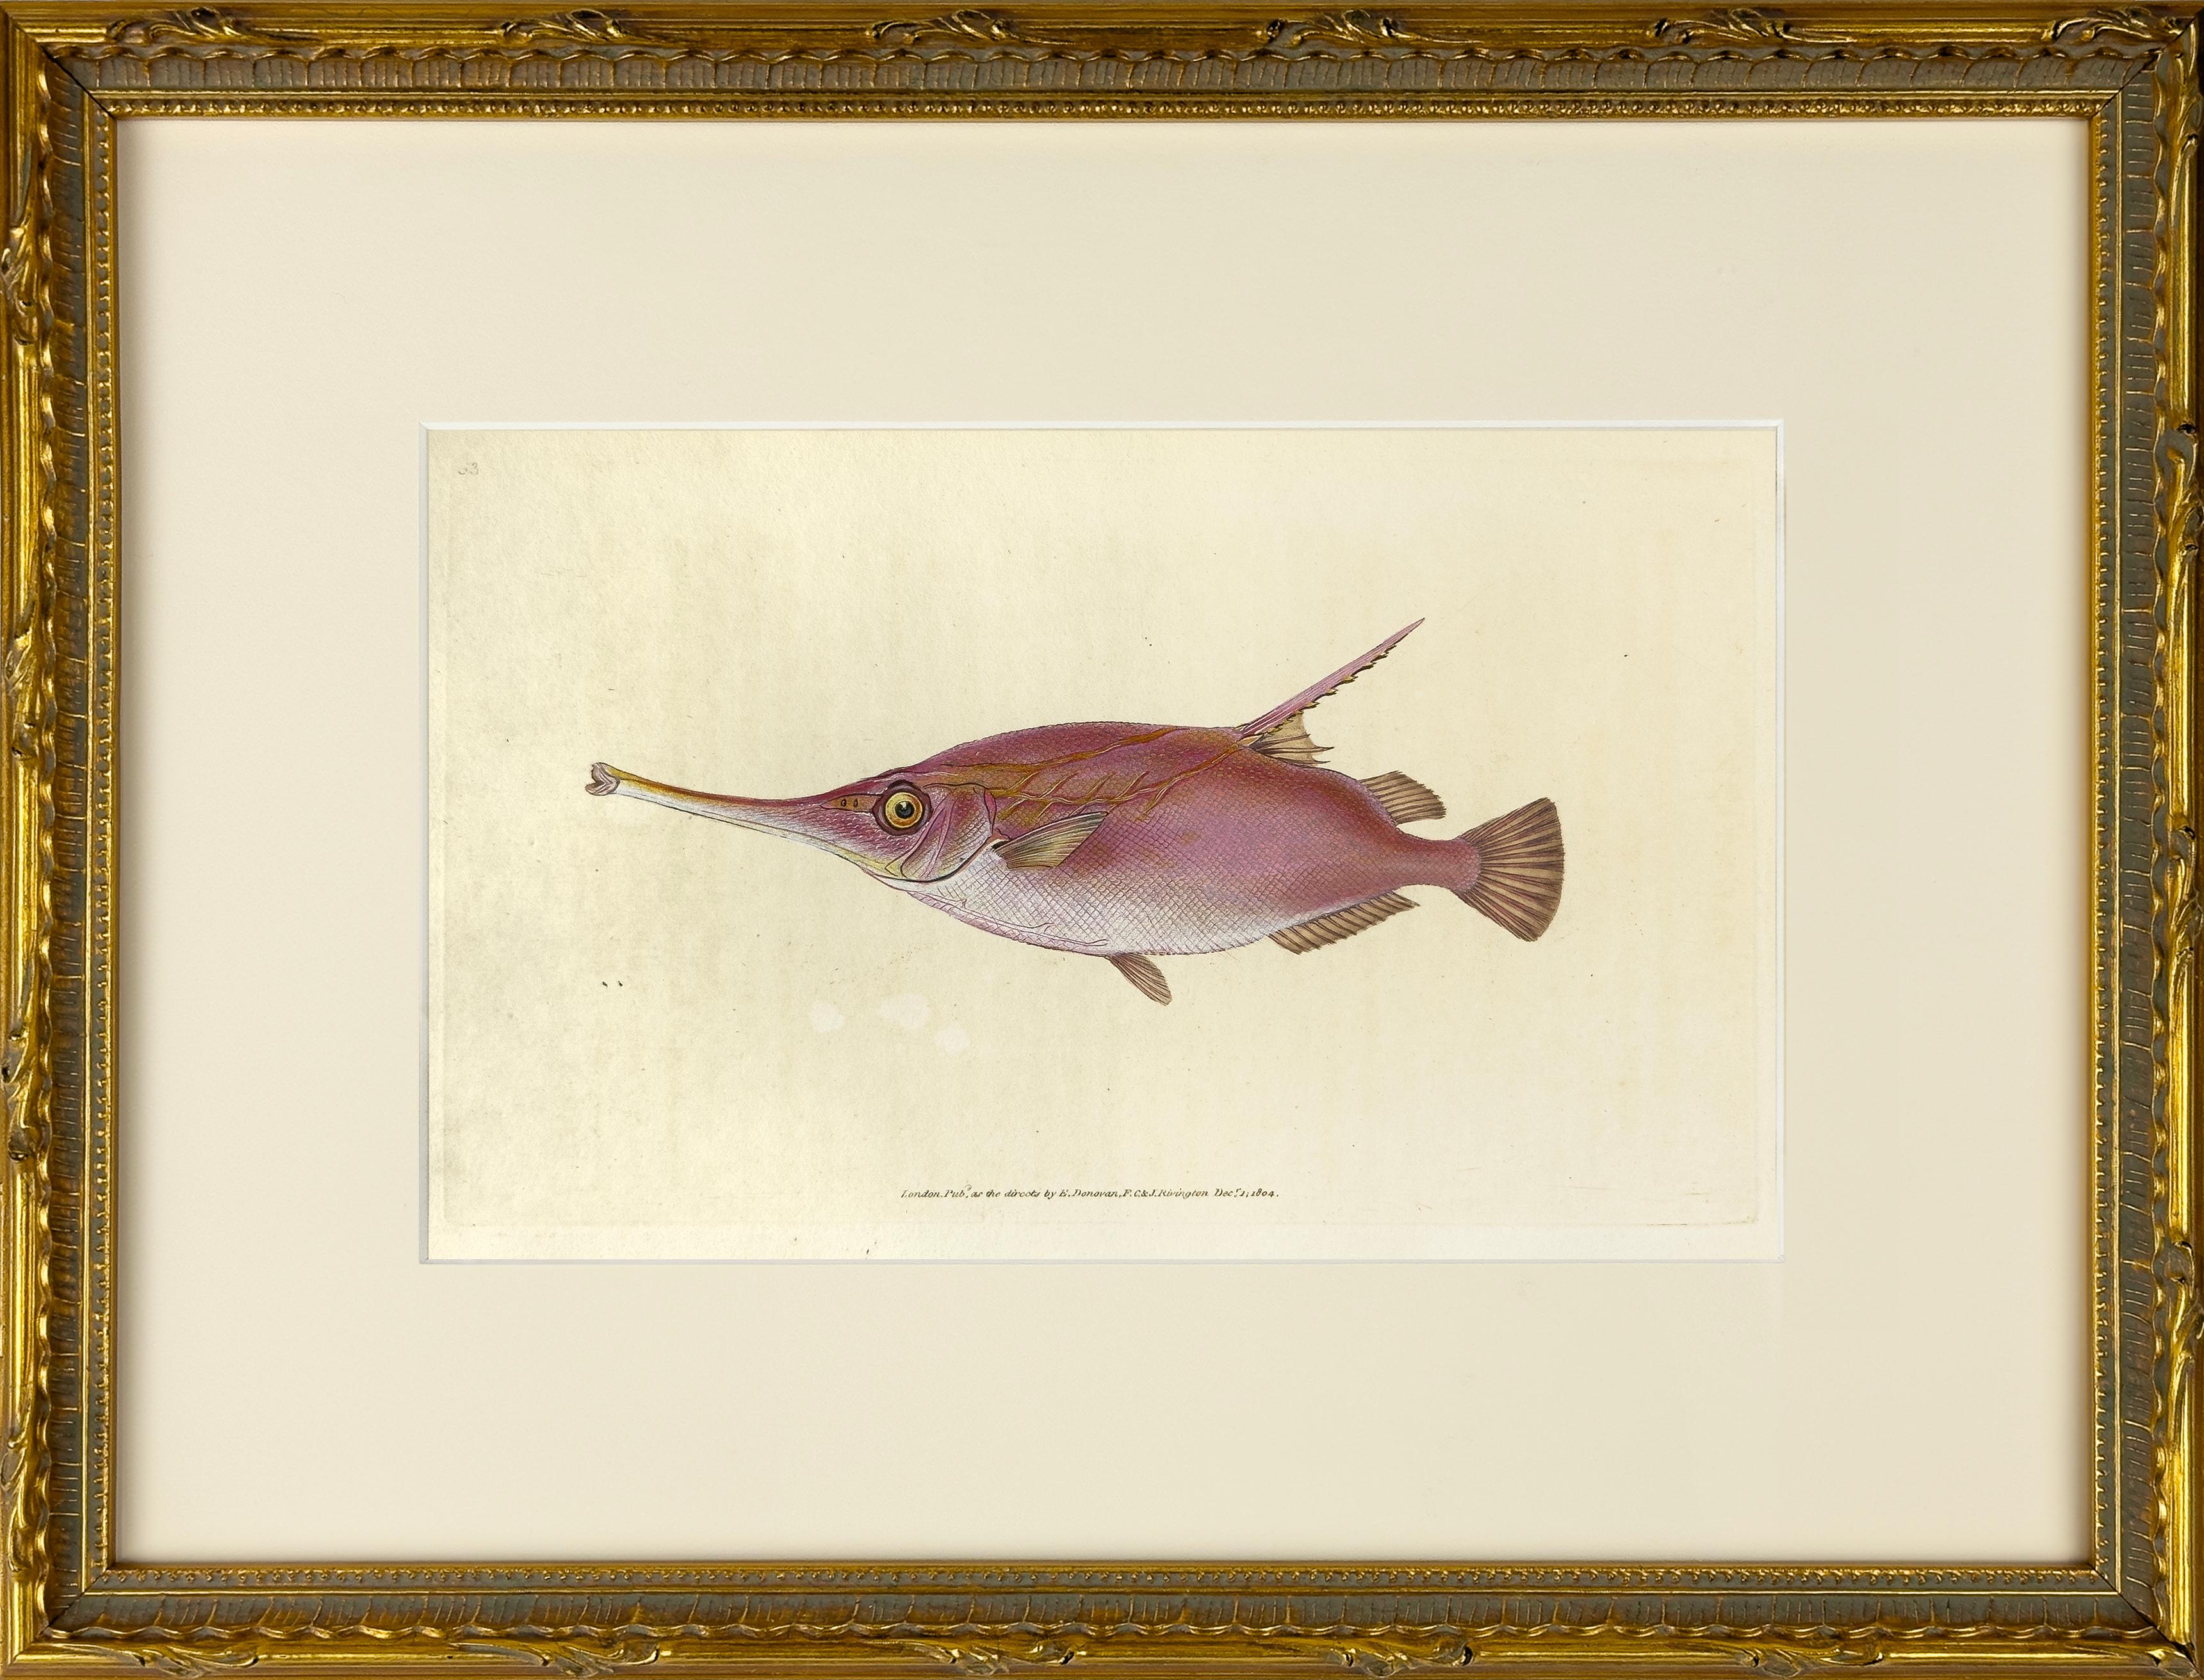 63: Centriscus Muschelax, Messer oder Trompetenfisch Fisch – Print von Edward Donovan